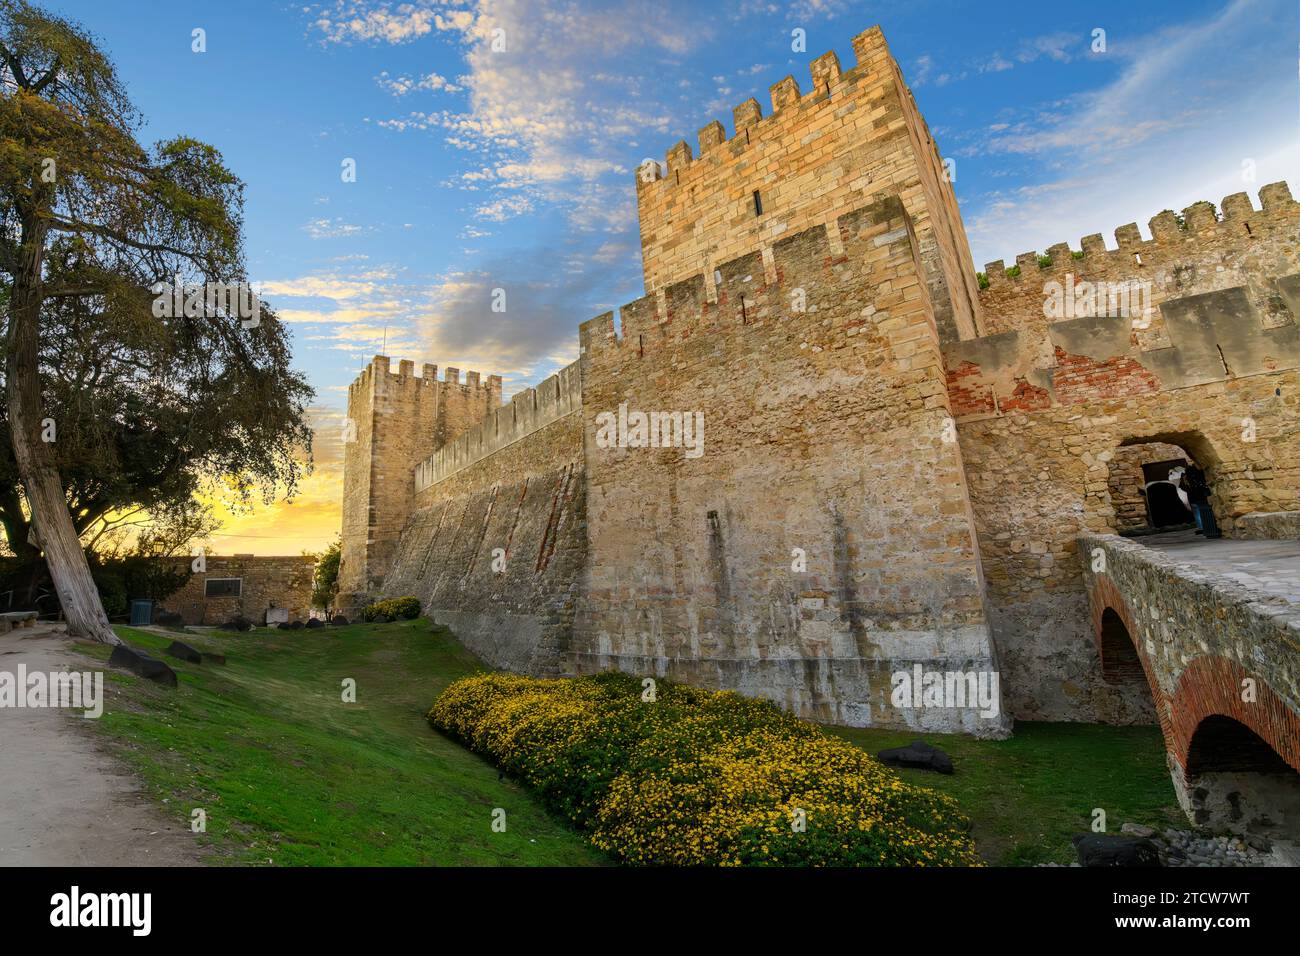 Eine beleuchtete St. George's Castle oder Castelo de São Jorge, eine Festung auf einem Hügel im Alfama-Viertel mit Blick auf Lissabon, Portugal. Stockfoto